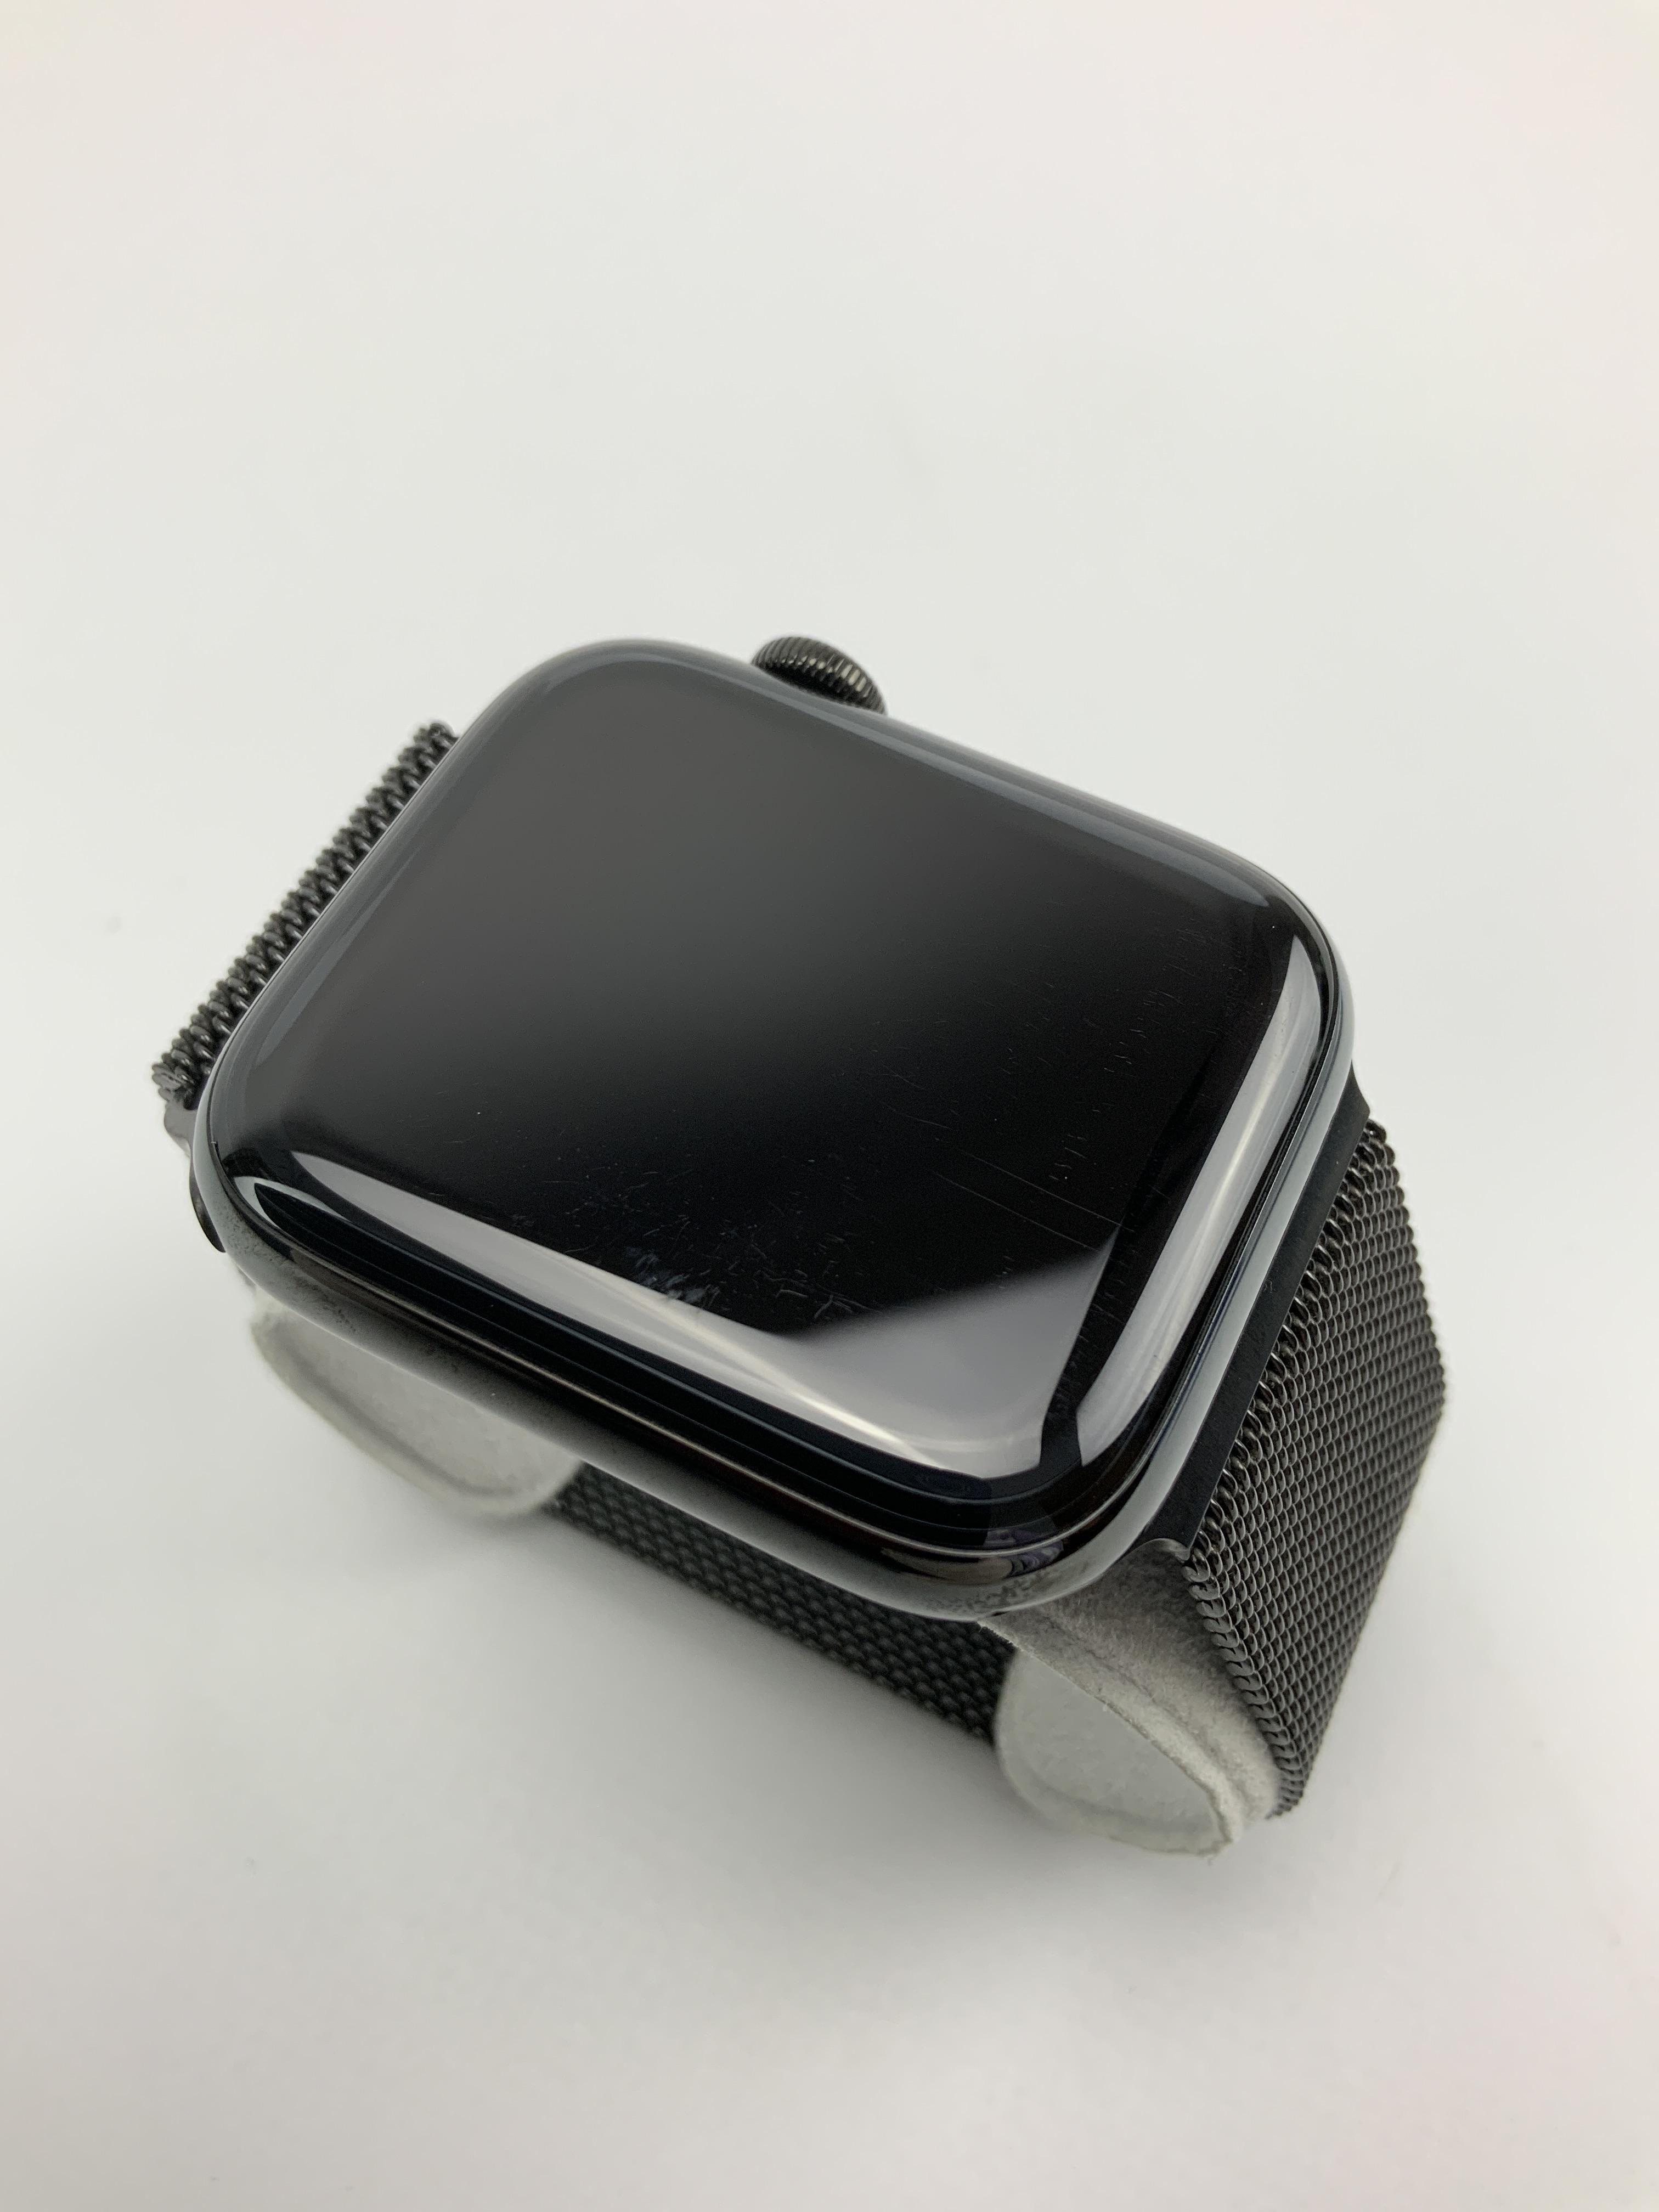 Watch Series 5 Steel Cellular (44mm), Space Black, bild 3